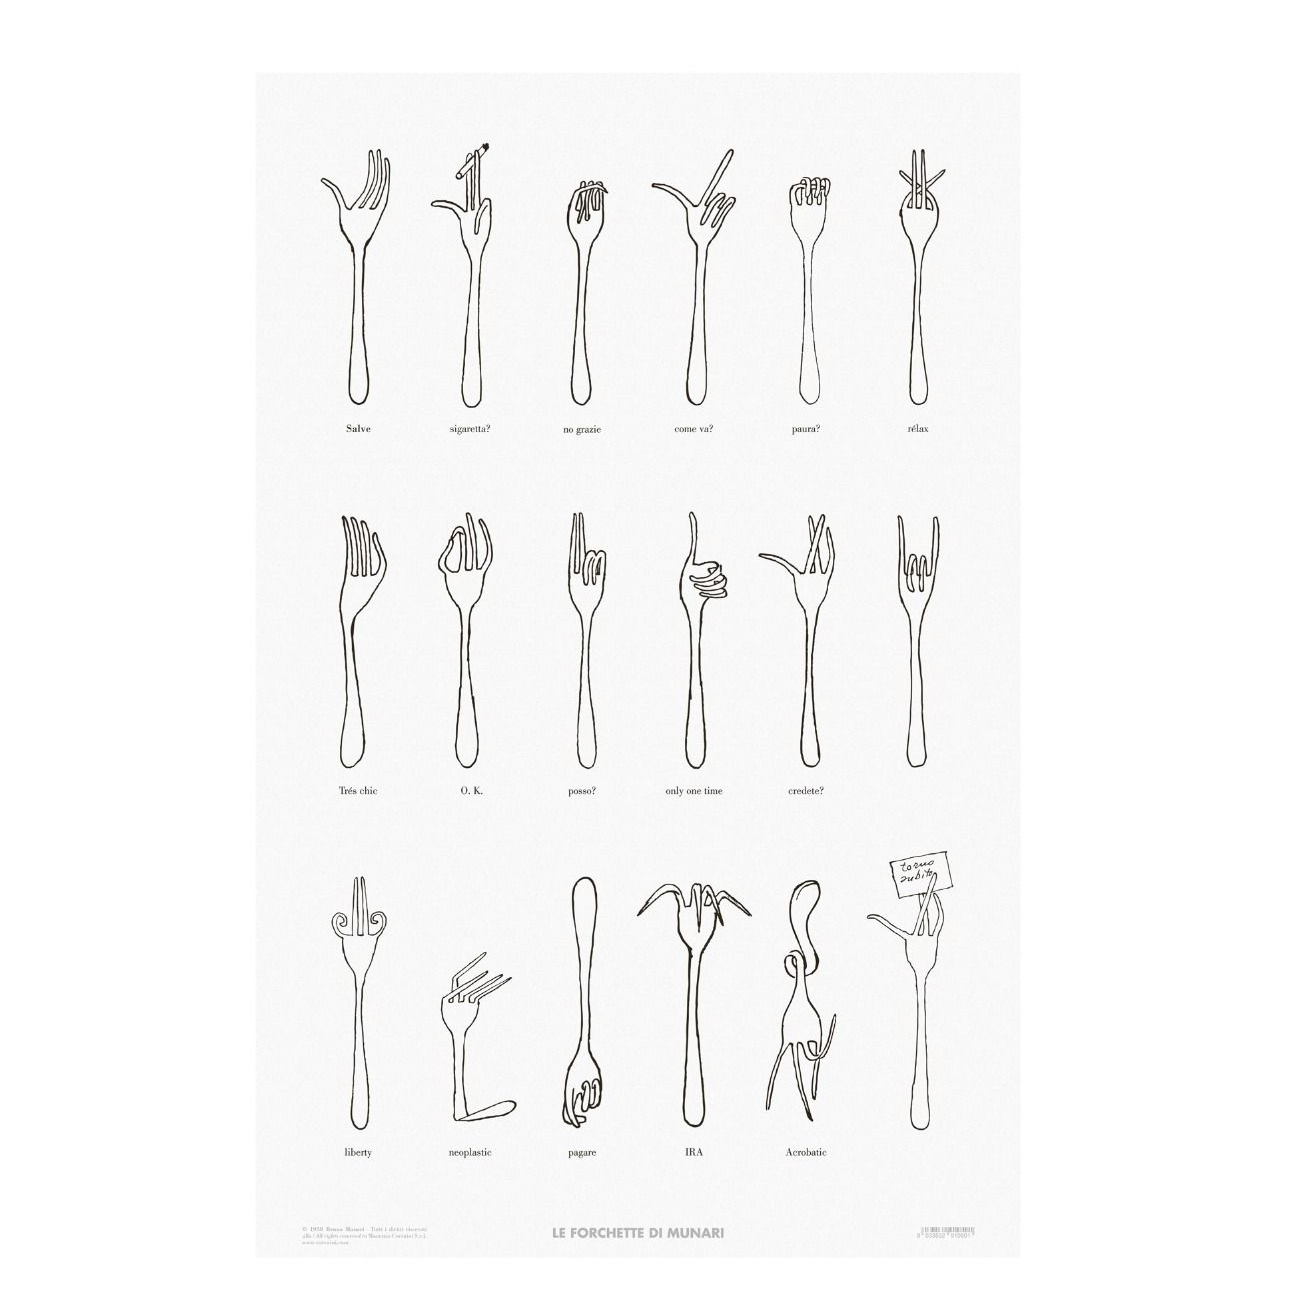 Le forchette di Munari - Poster